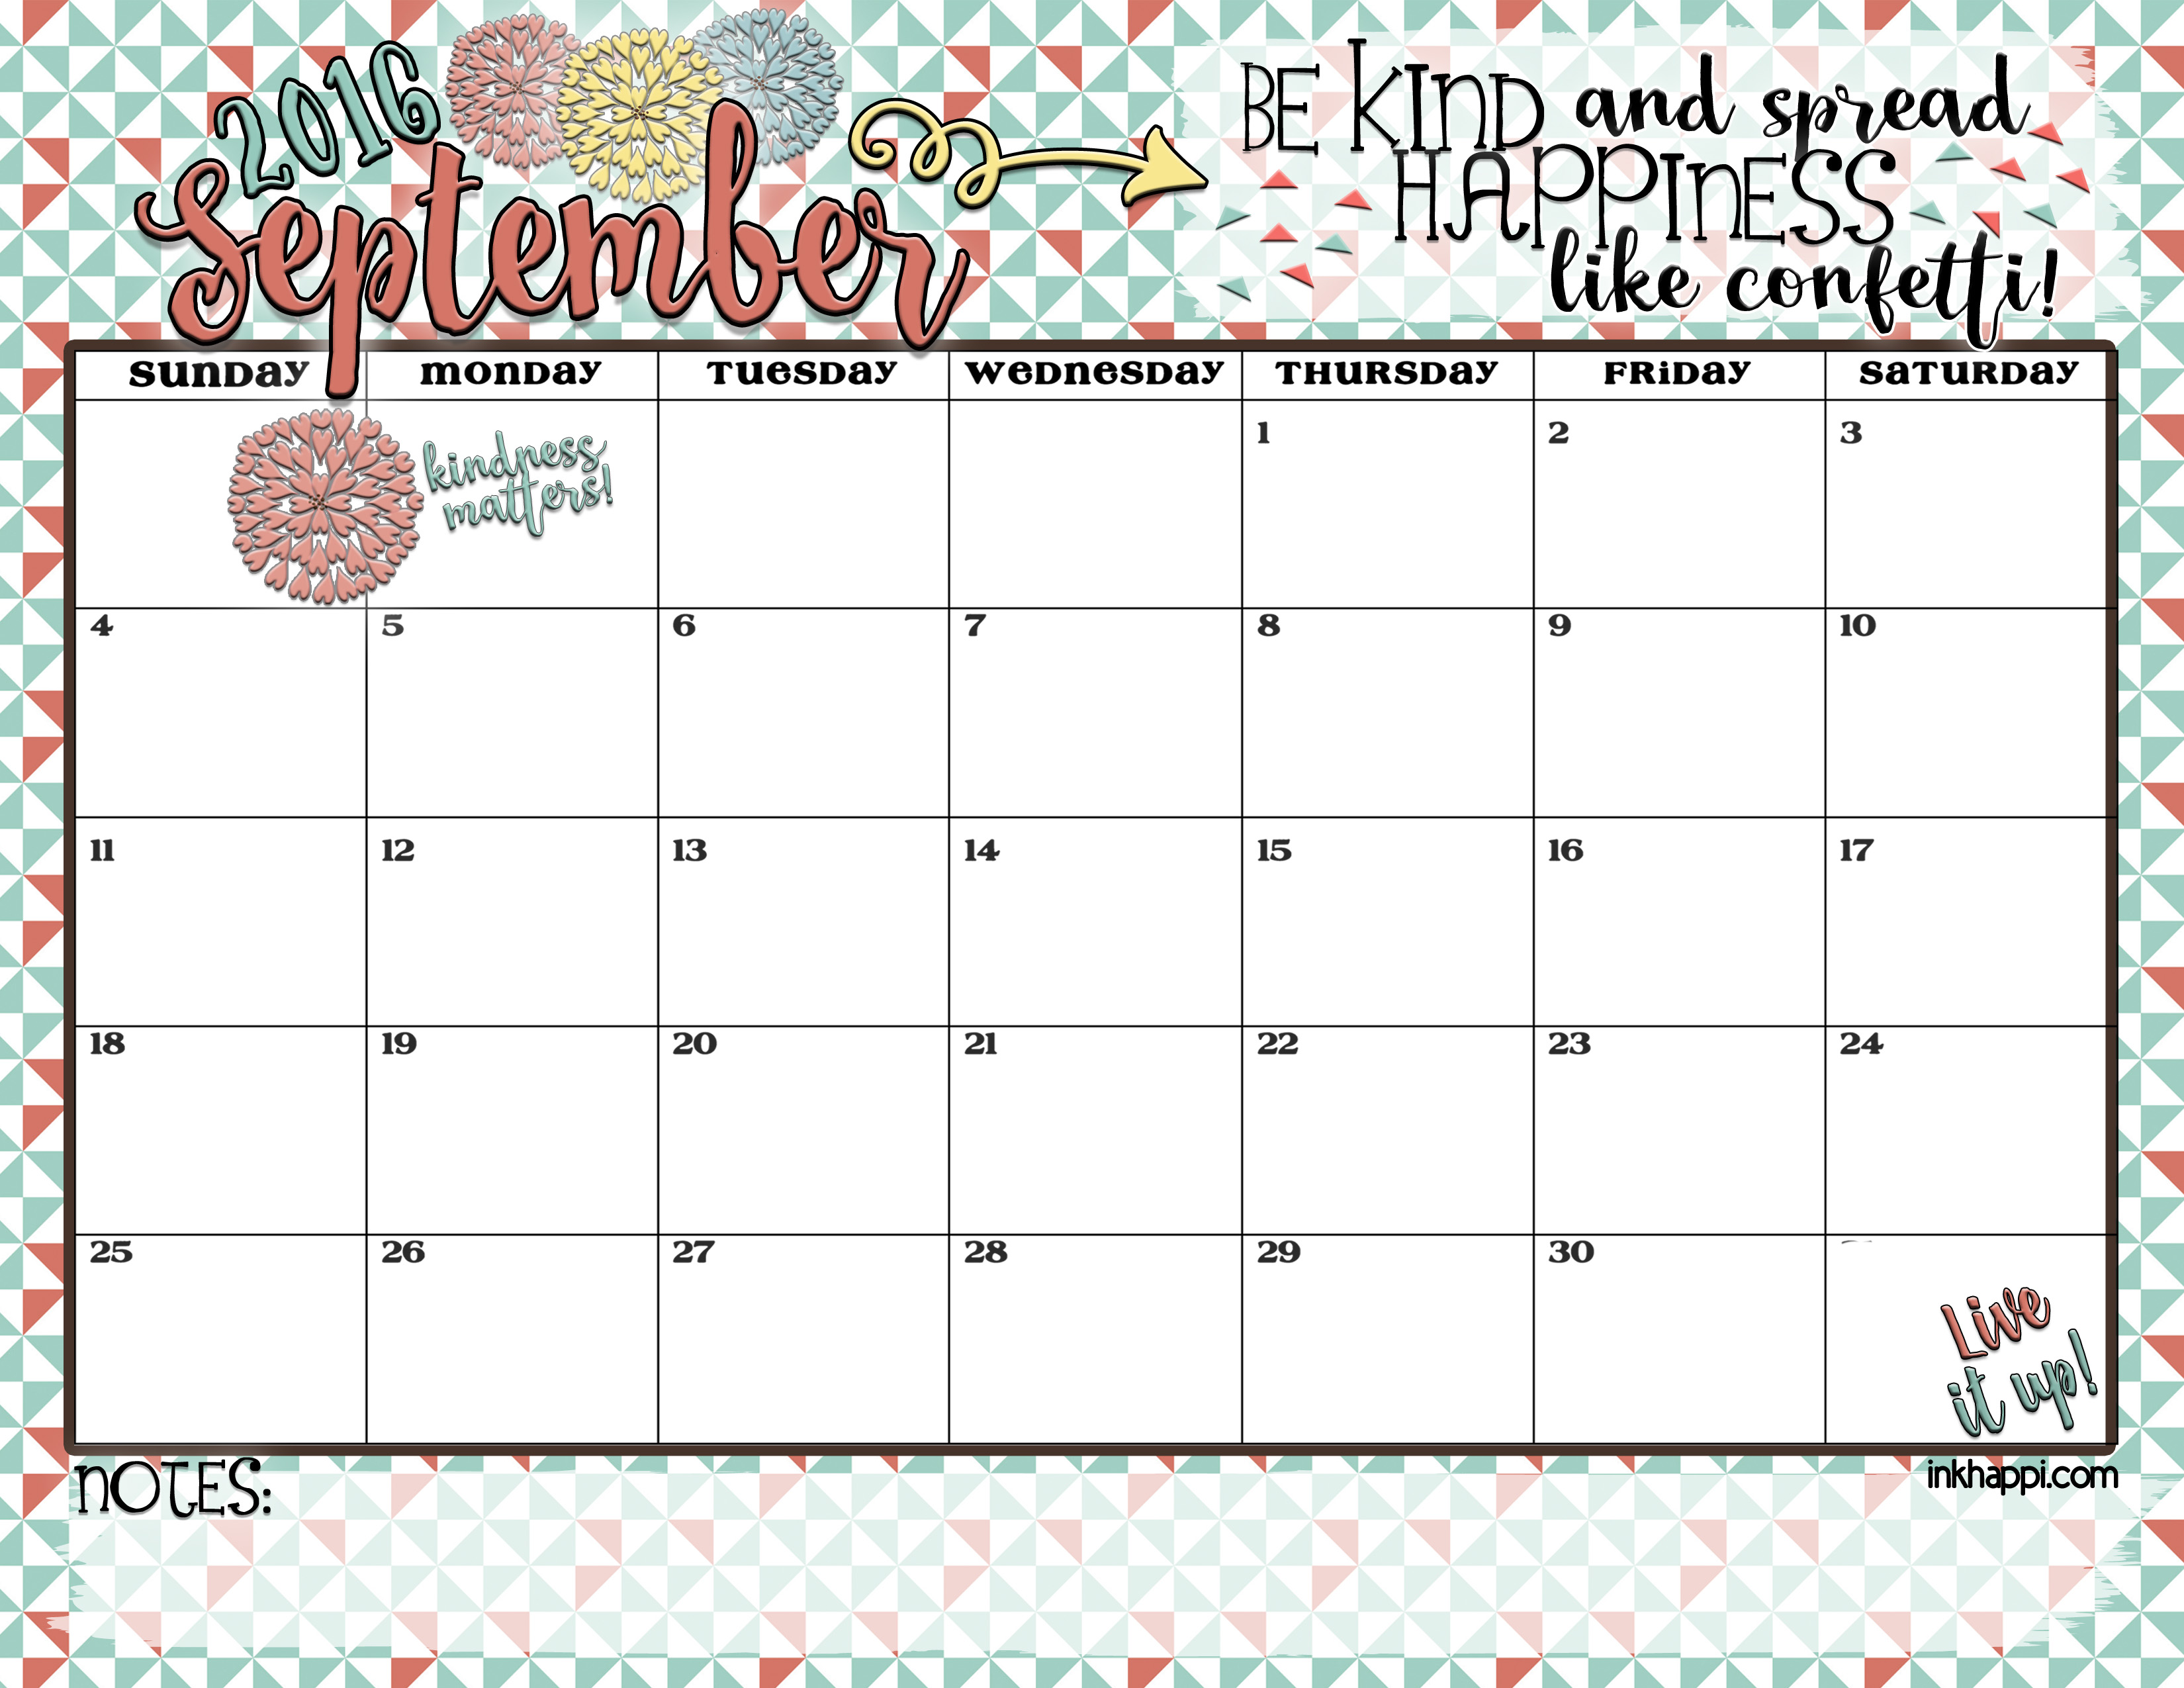 September 2016 Calendar_edited 1